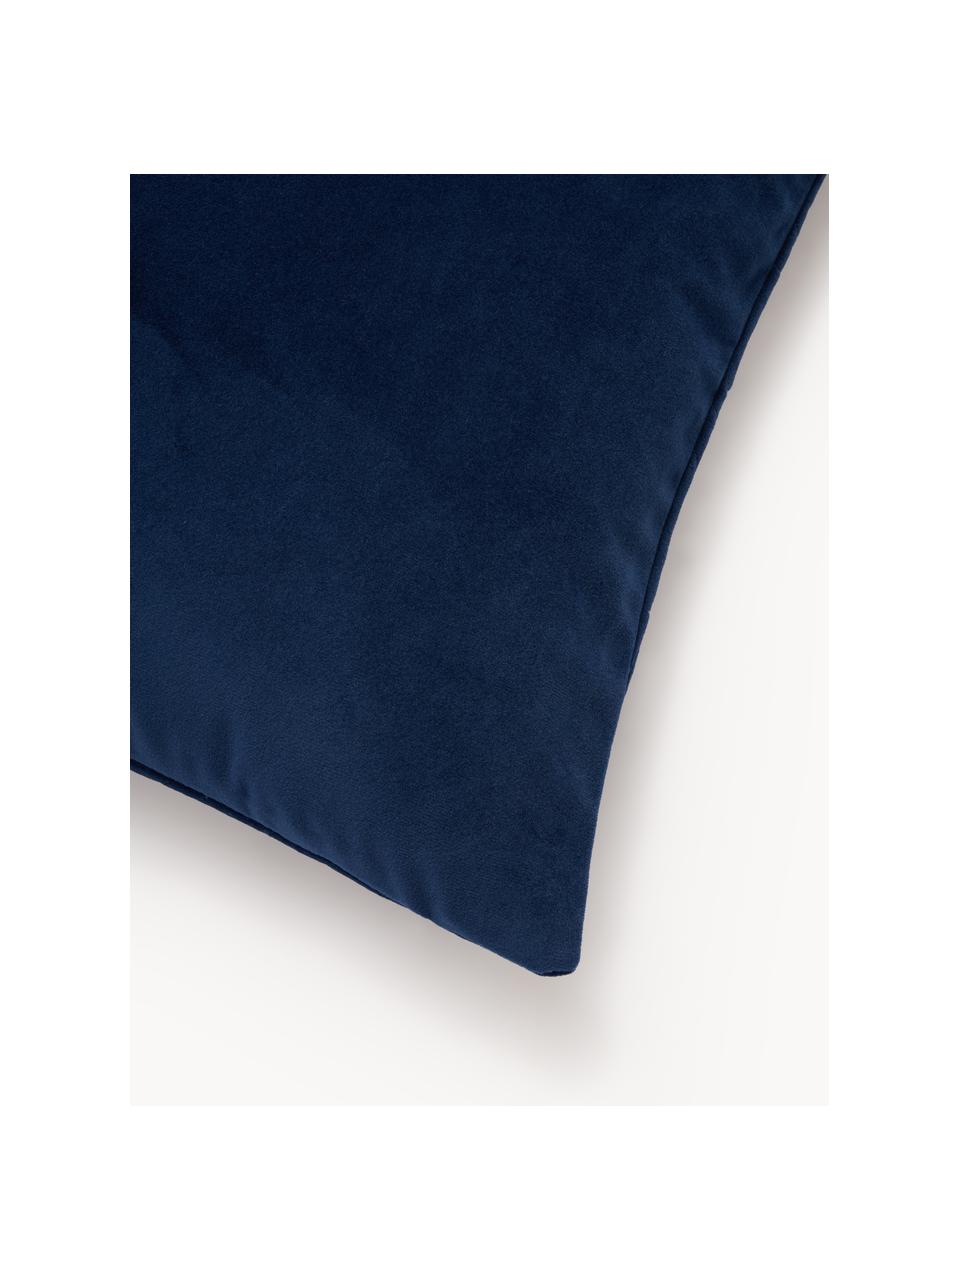 Poszewka na poduszkę z aksamitu Hera, 100% poliester z recyklingu, Ciemny niebieski, S 45 x D 45 cm